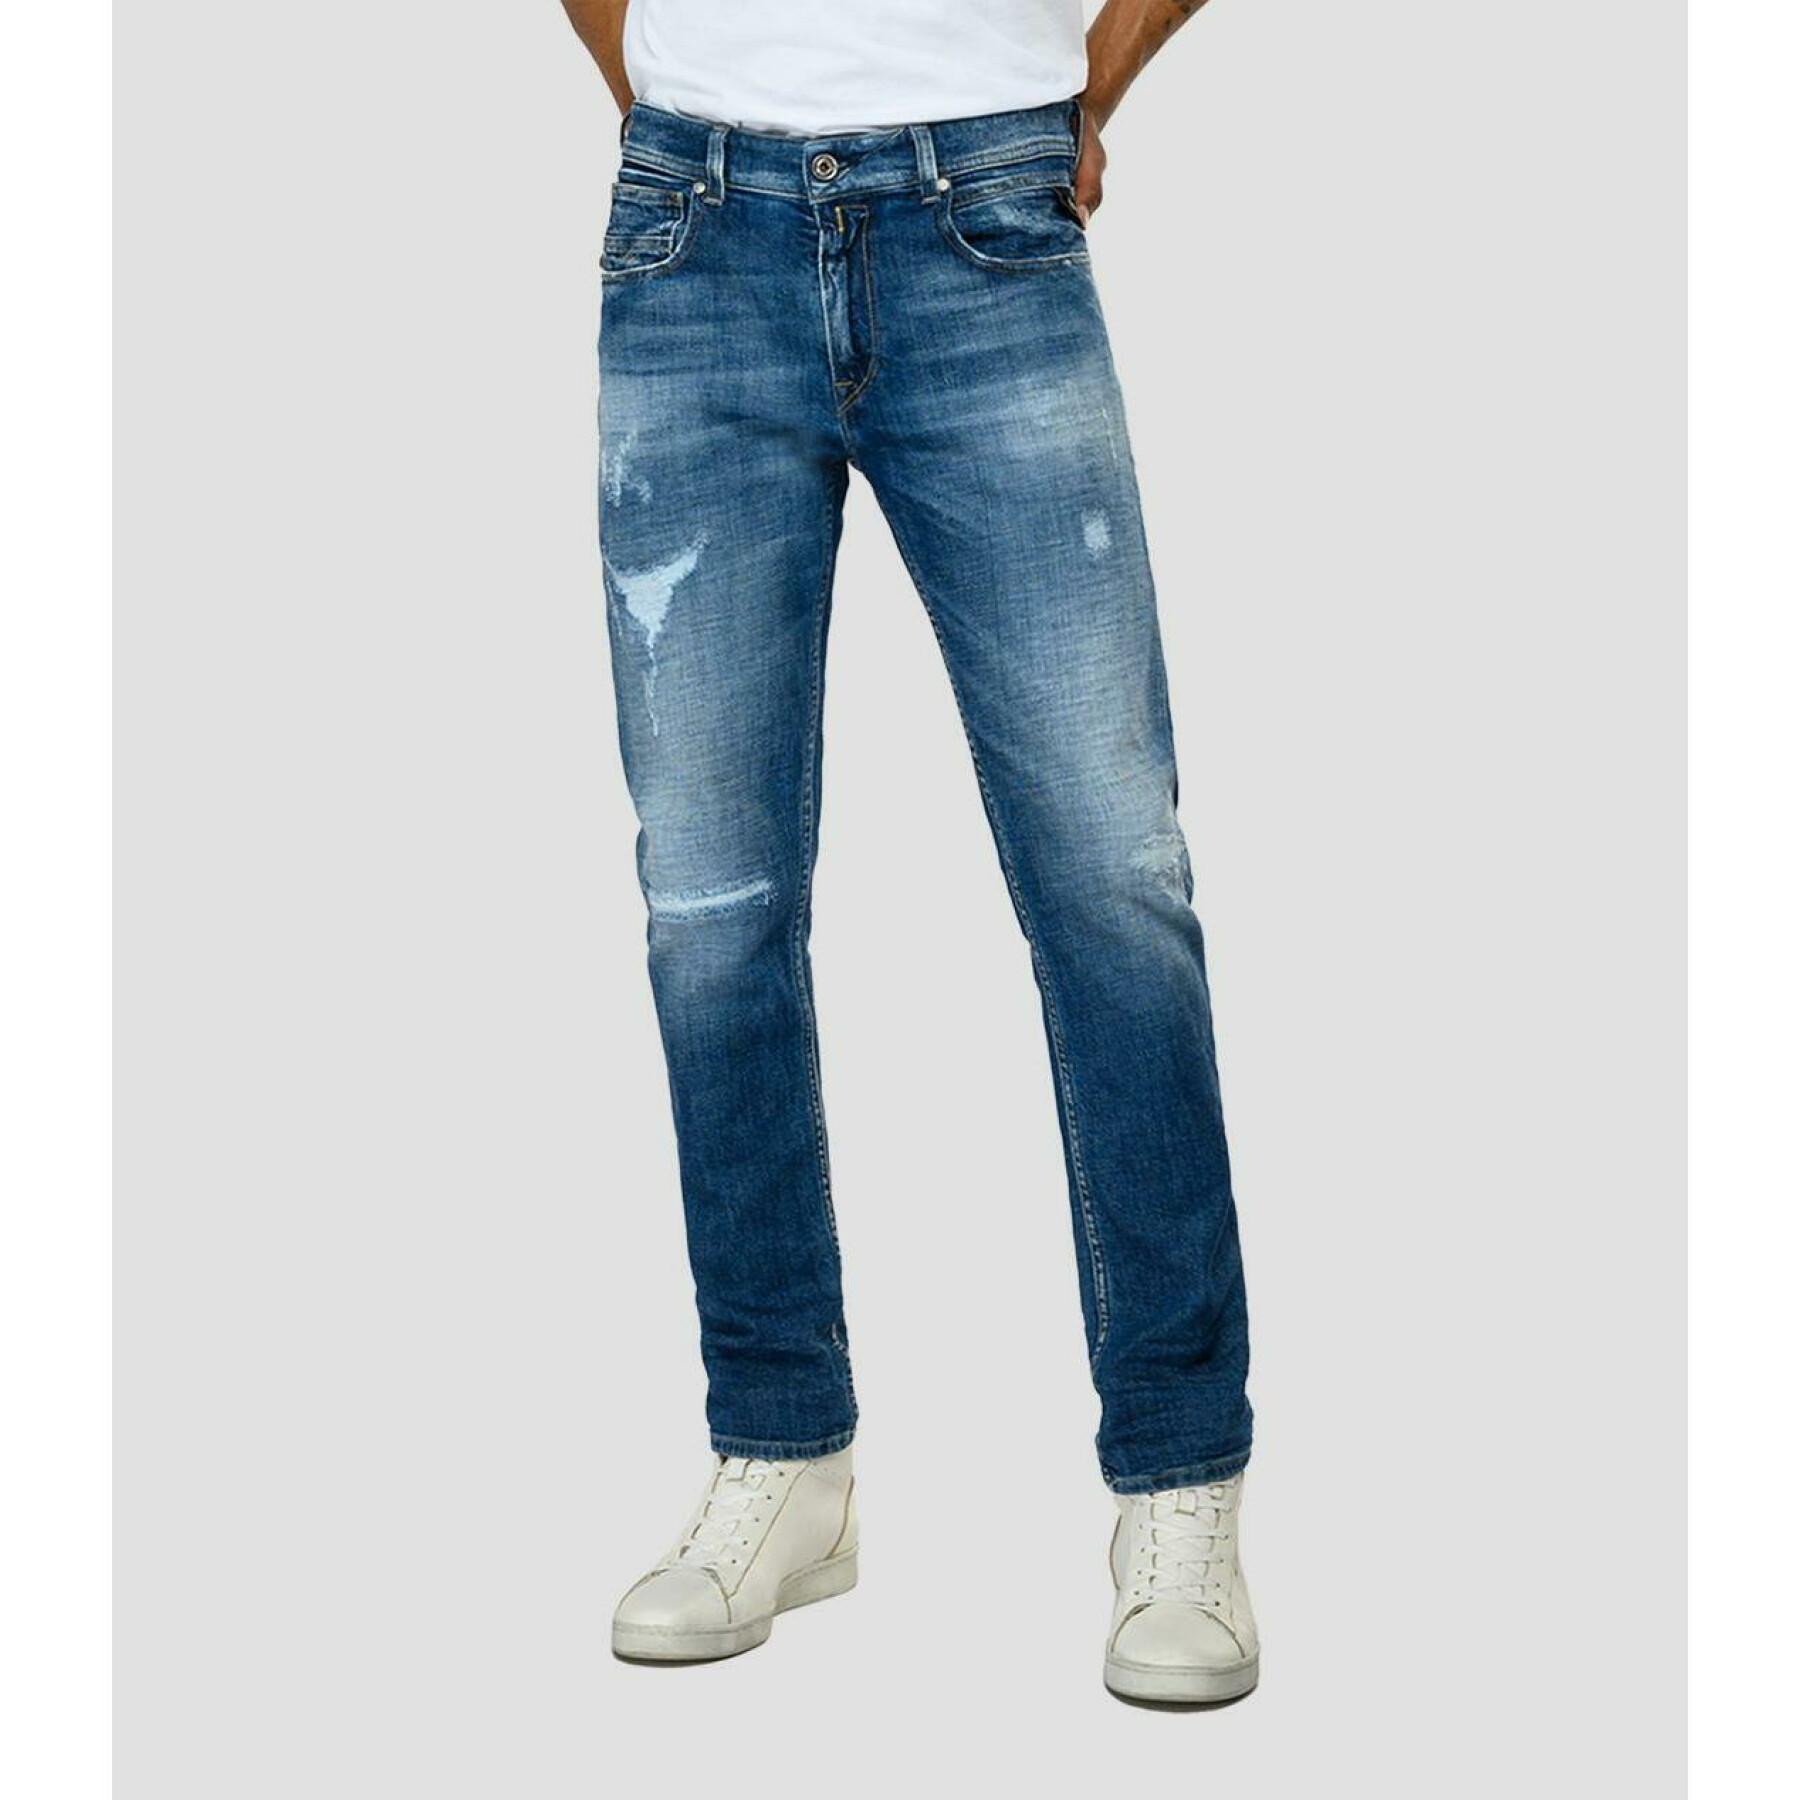 Low rise skinny jeans Replay johnfrus broken edge